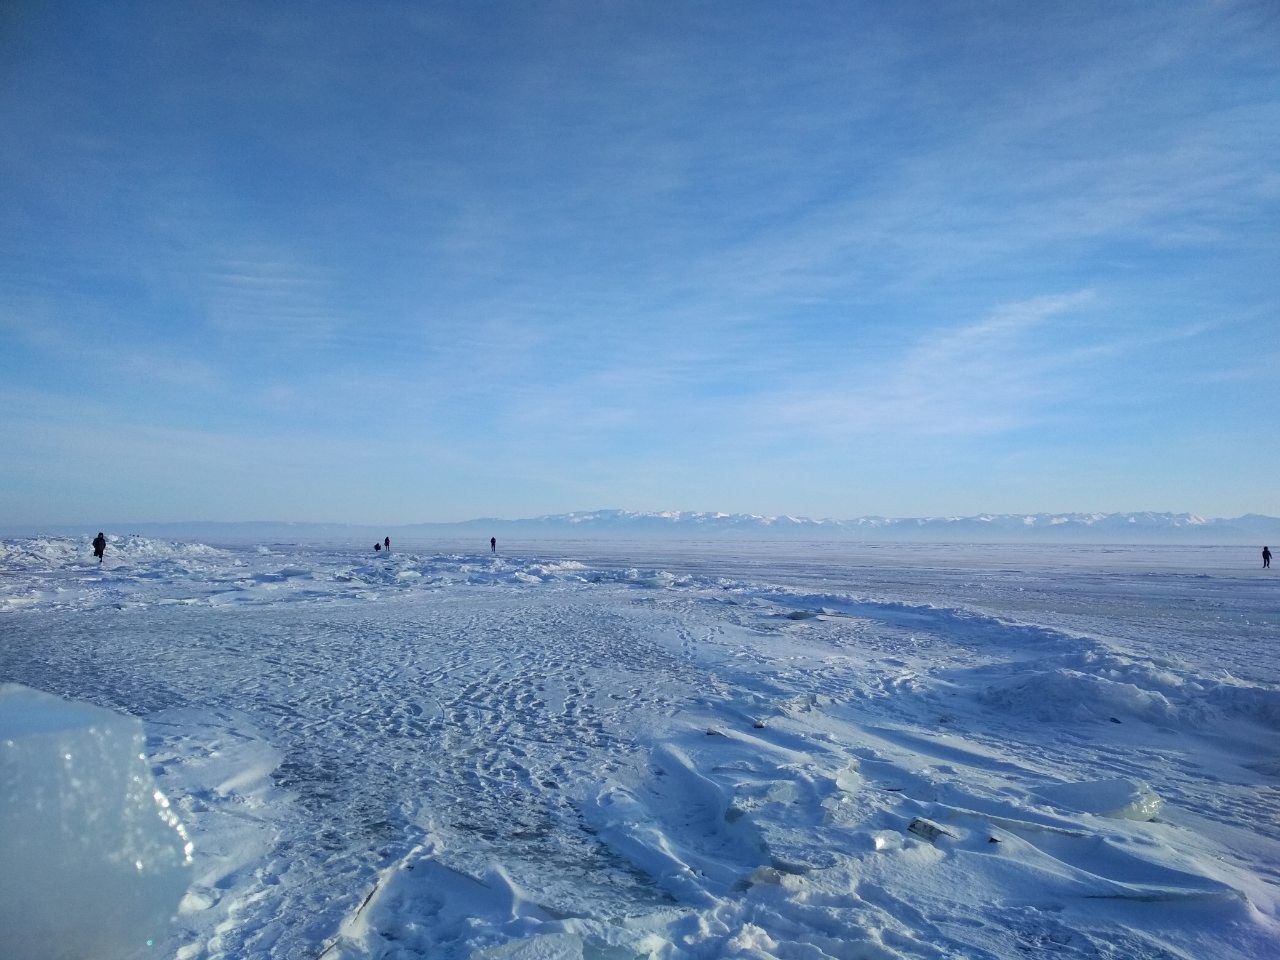 Погода в листвянке сегодня. Зимний Байкал. Байкал зимой фото. Ледовая станция Листвянка. Аэропорт Байкал зимой.